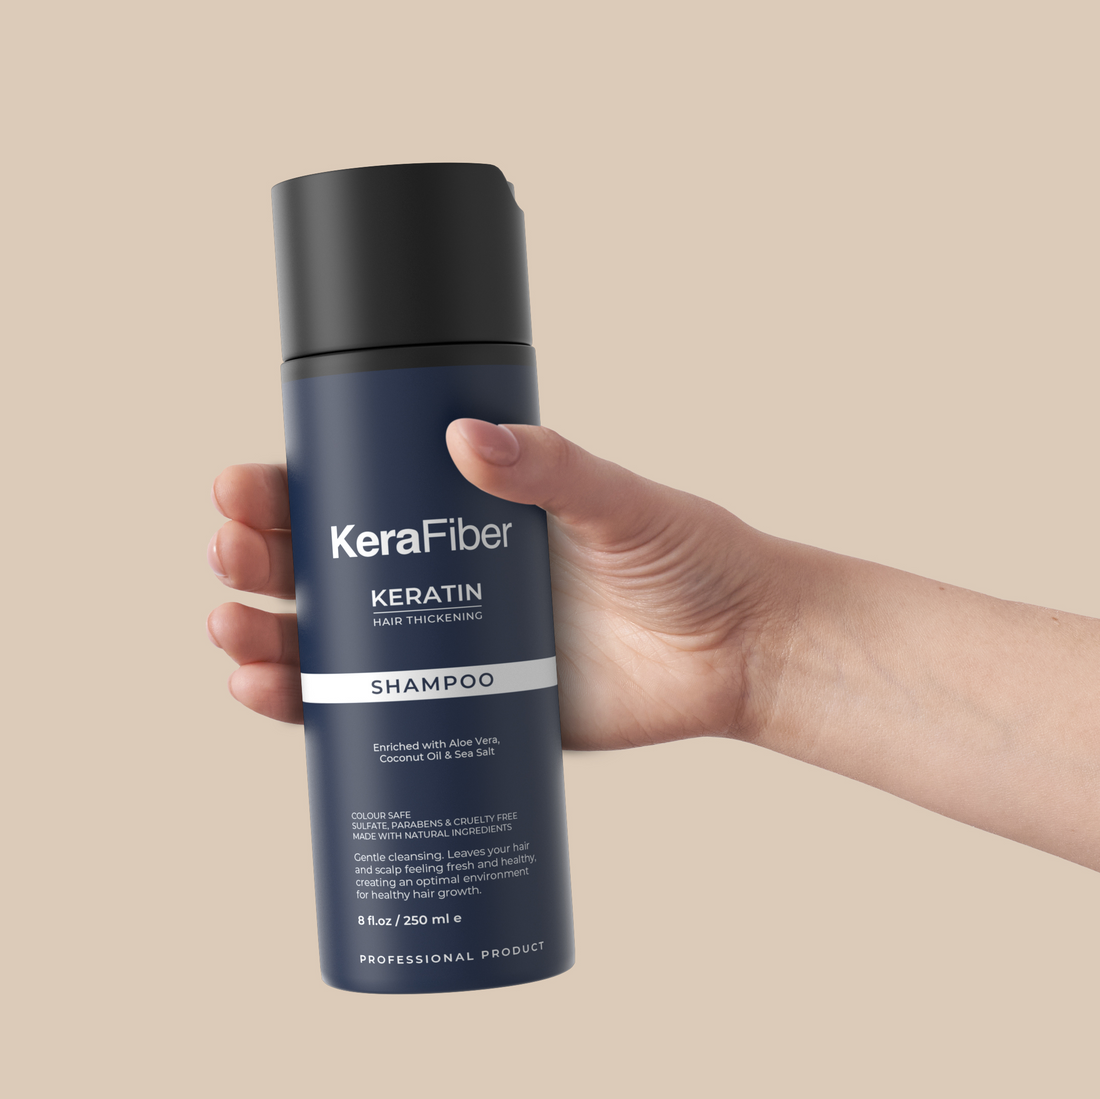 Keratin-Shampoo für hartes Wasser